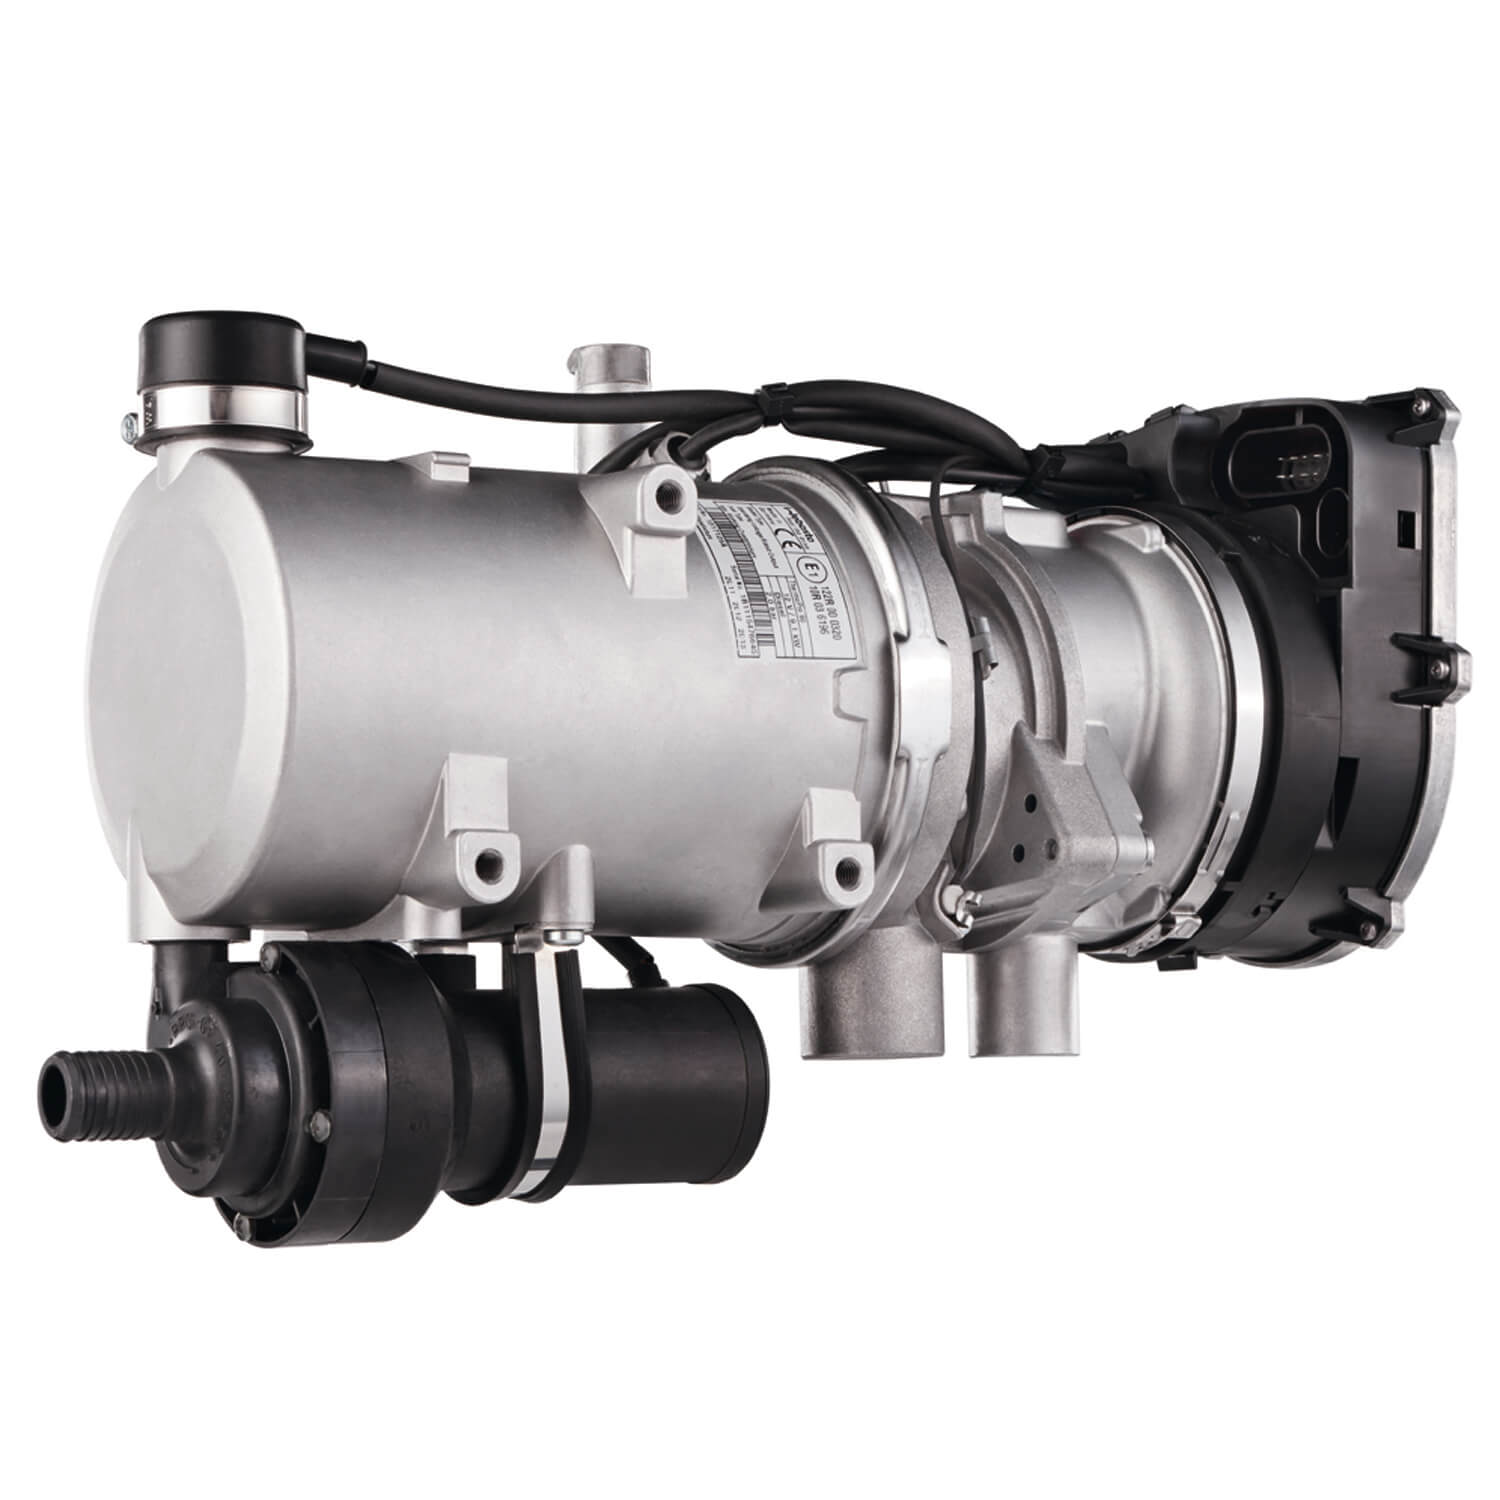 Webasto Standheizung Thermo Pro 50 Eco Diesel 24V / 5kW inkl. Einbausatz  mit Höhenanpassung